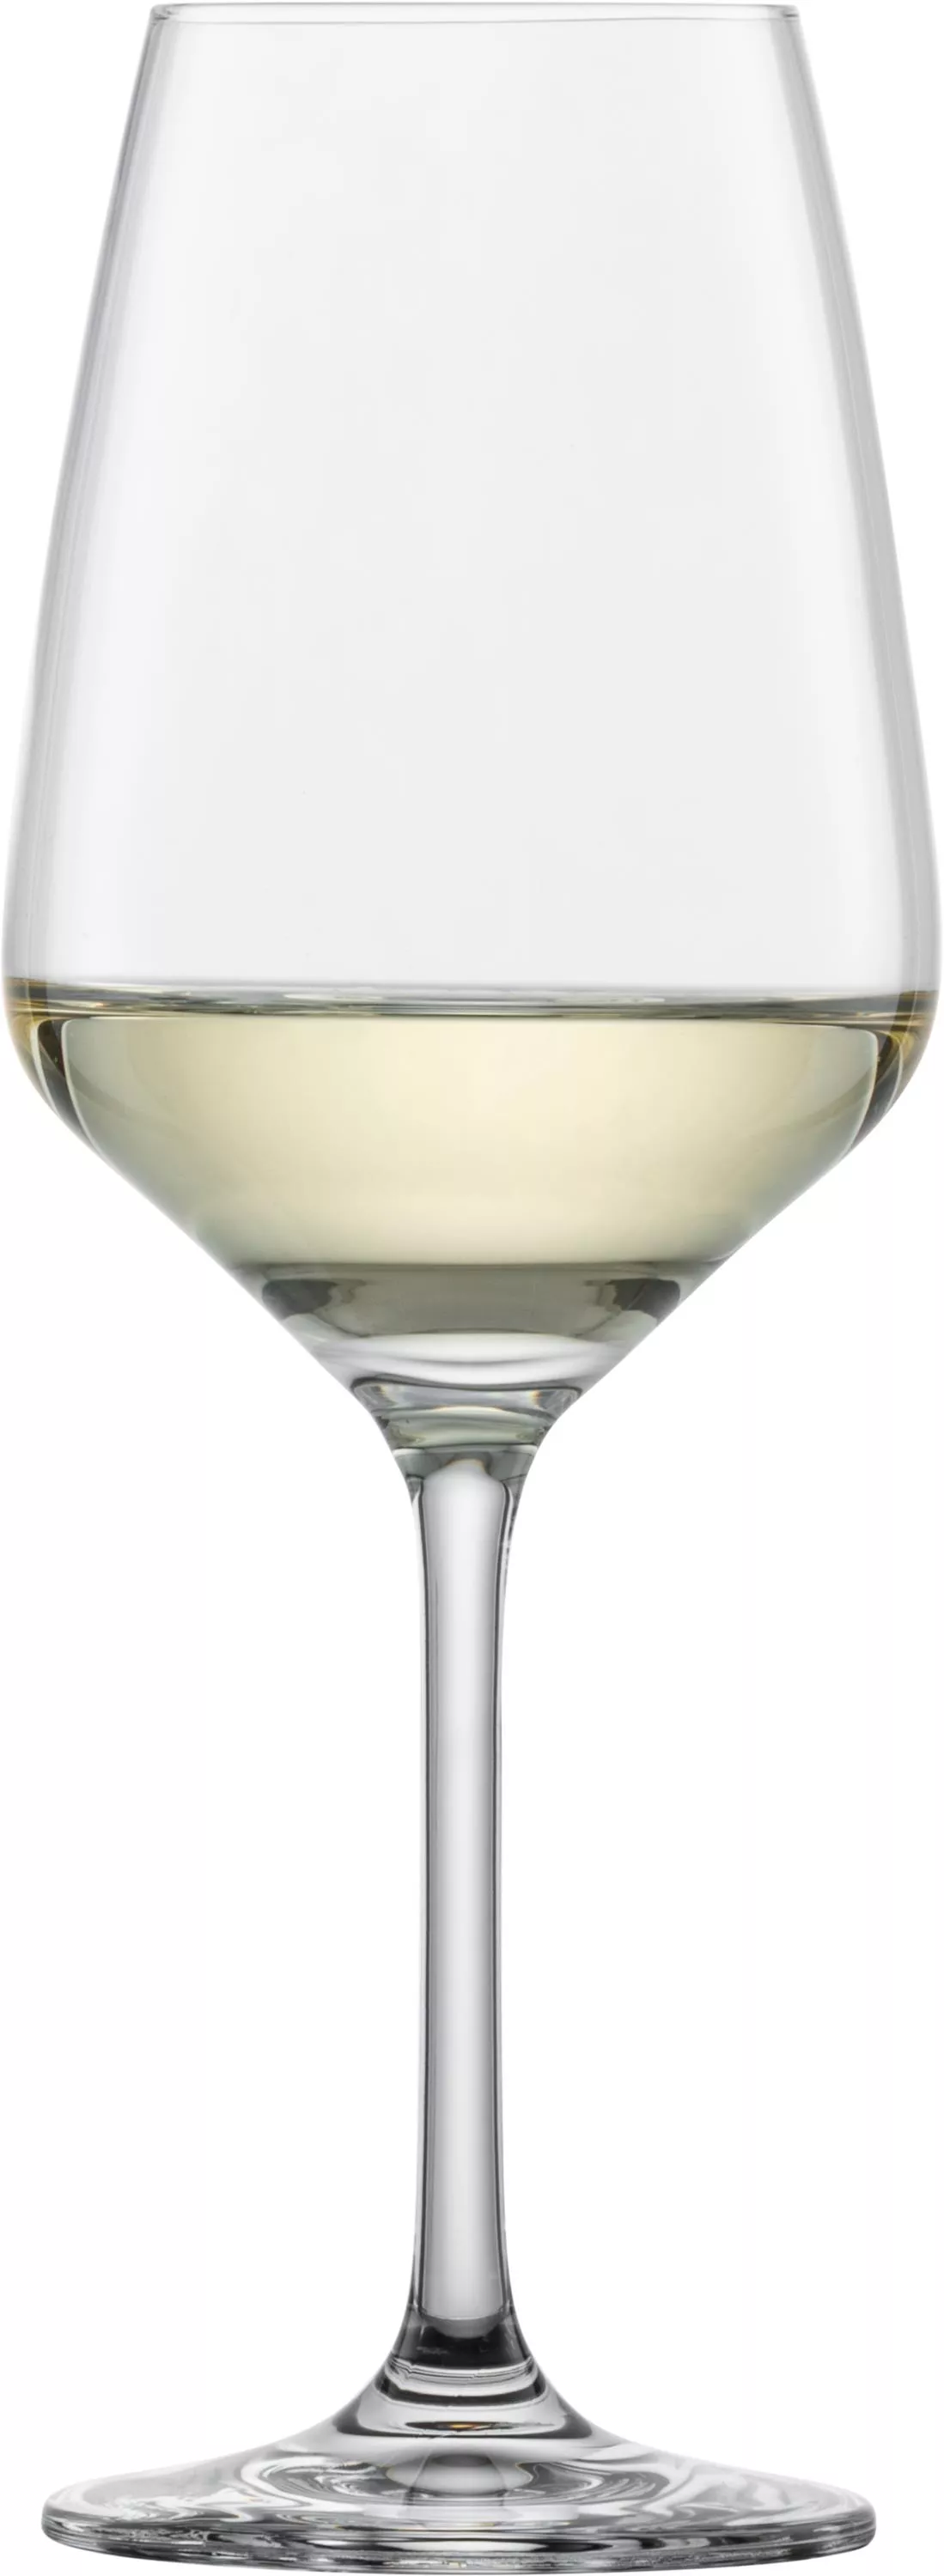 TASTE Weißweinglas 356 ml